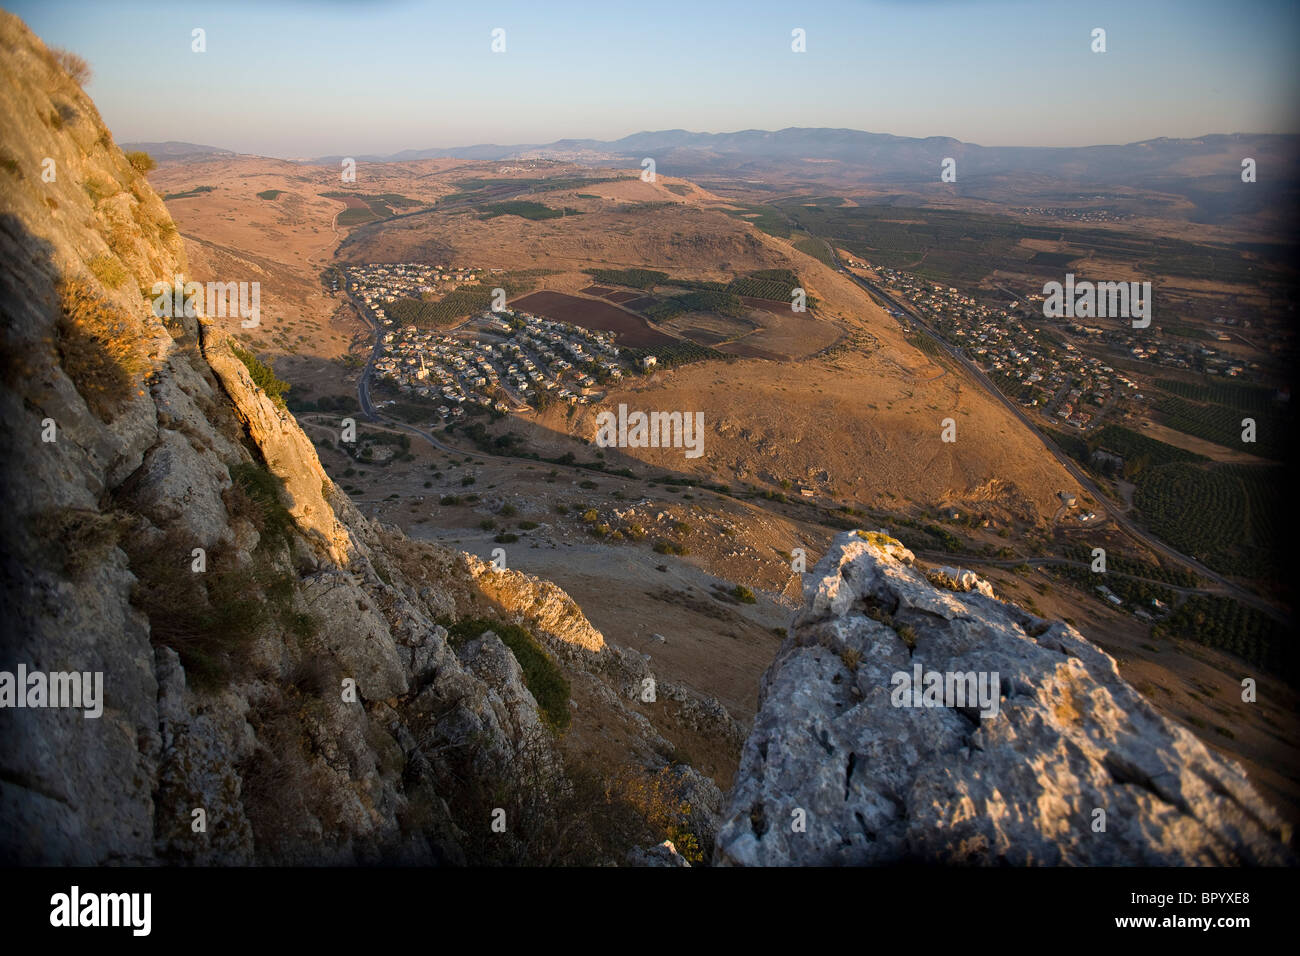 Fotografía del paisaje desde la cumbre del monte Arbel en Galilea. Foto de stock